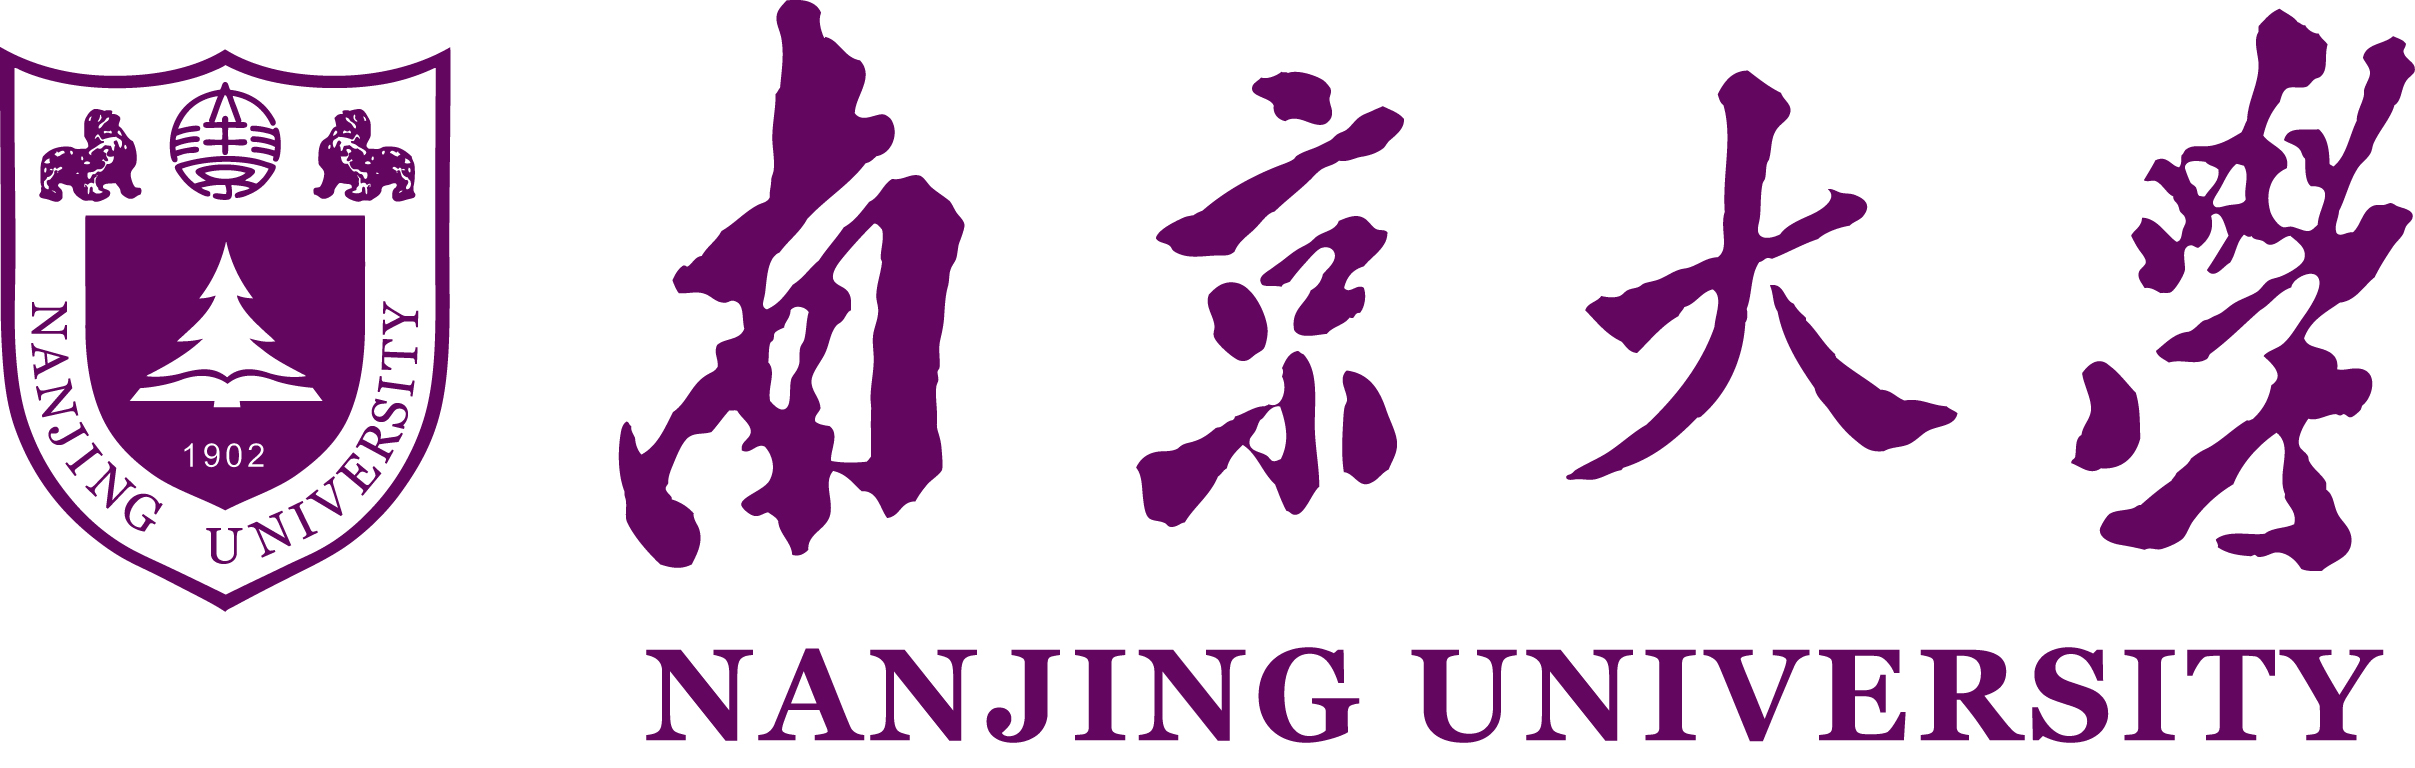 Univerza Nanjing | Študirati v tujini